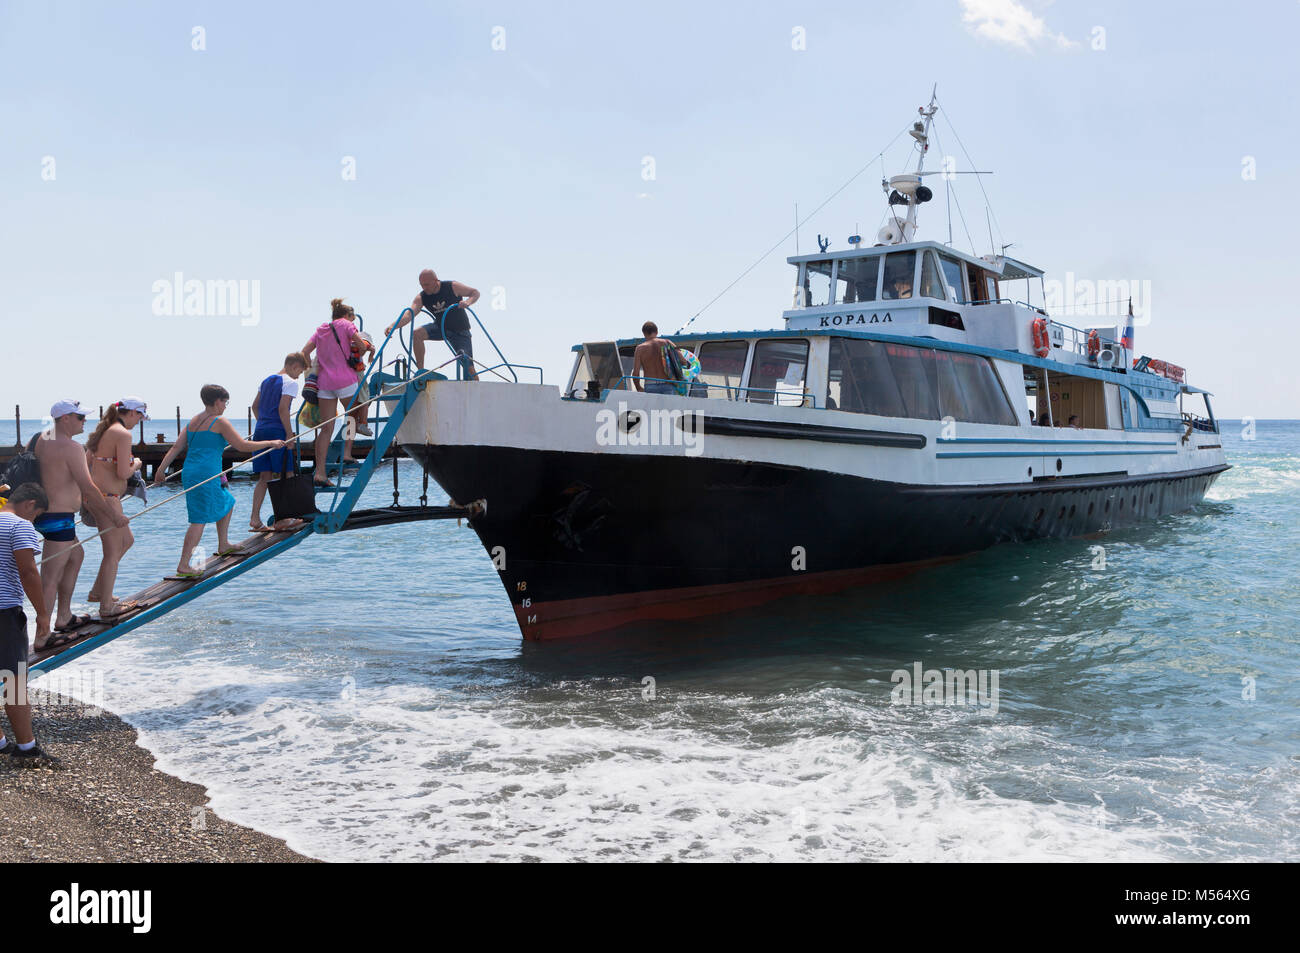 Gelendzhik, région de Krasnodar, Russie - le 17 juillet 2015 : Les passagers à bord de la plage resort village Praskoveevka sur le navire Coral Banque D'Images